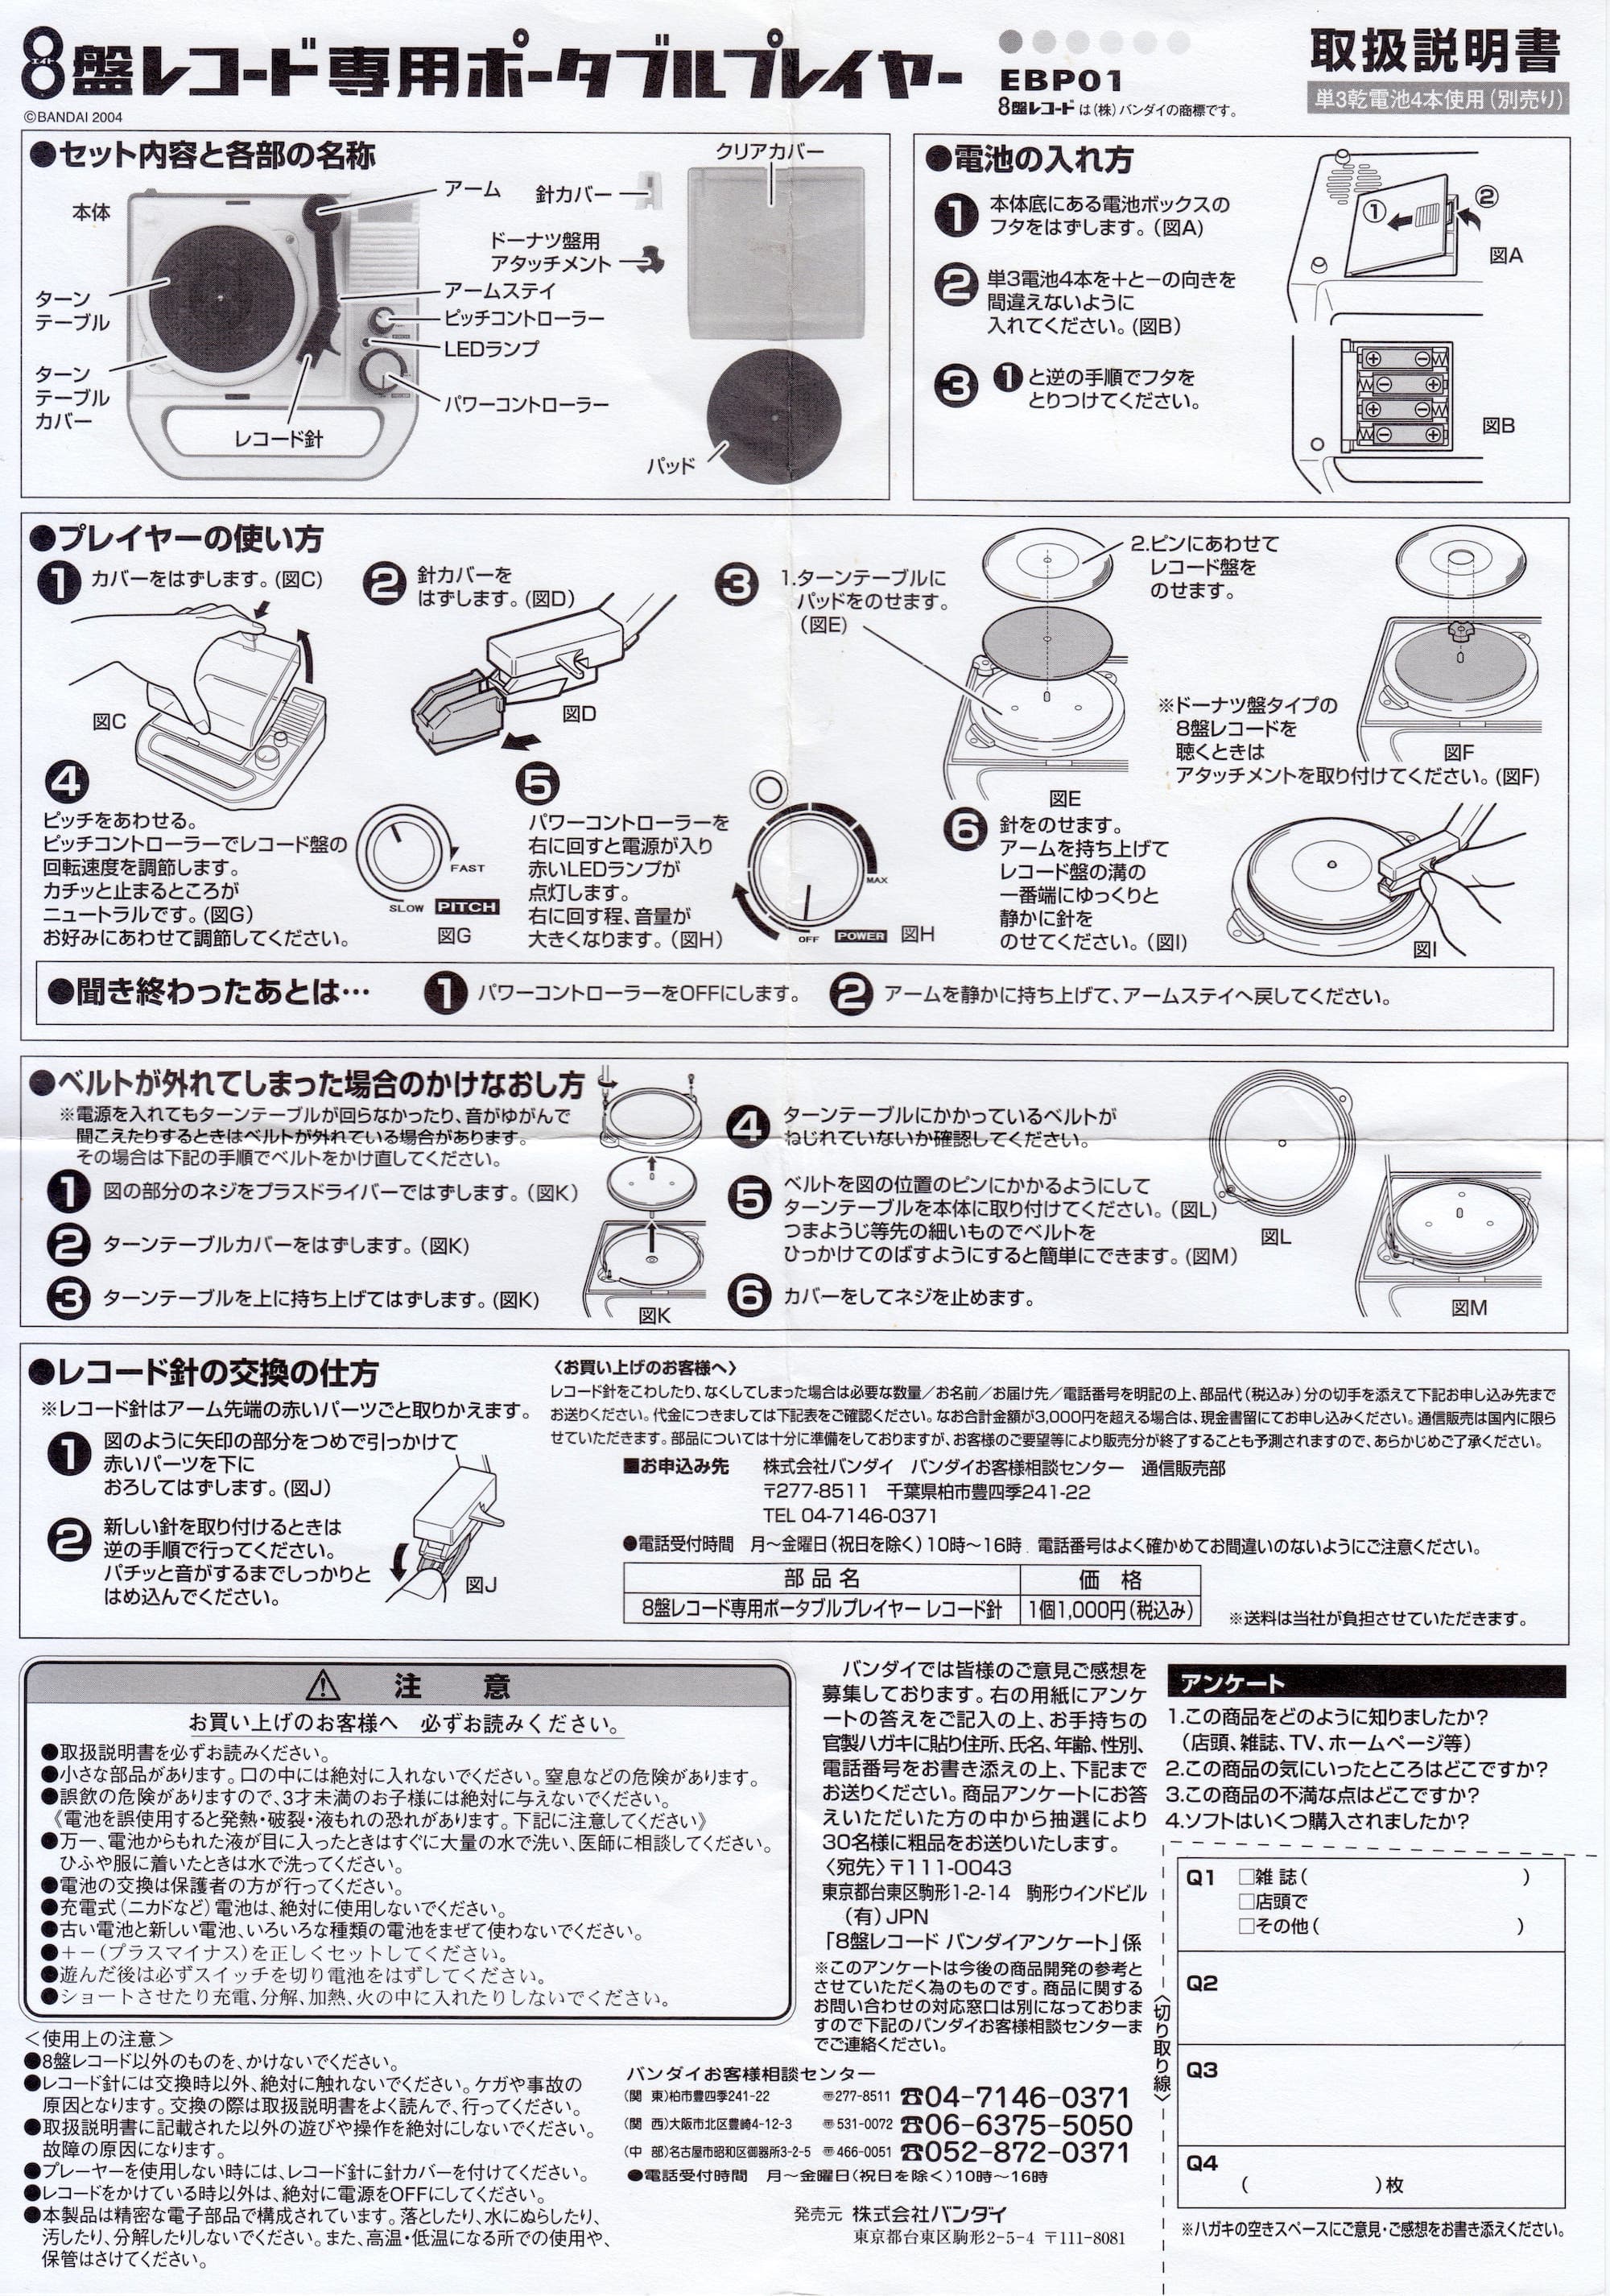 Bandai 8-ban record player instruction sheet